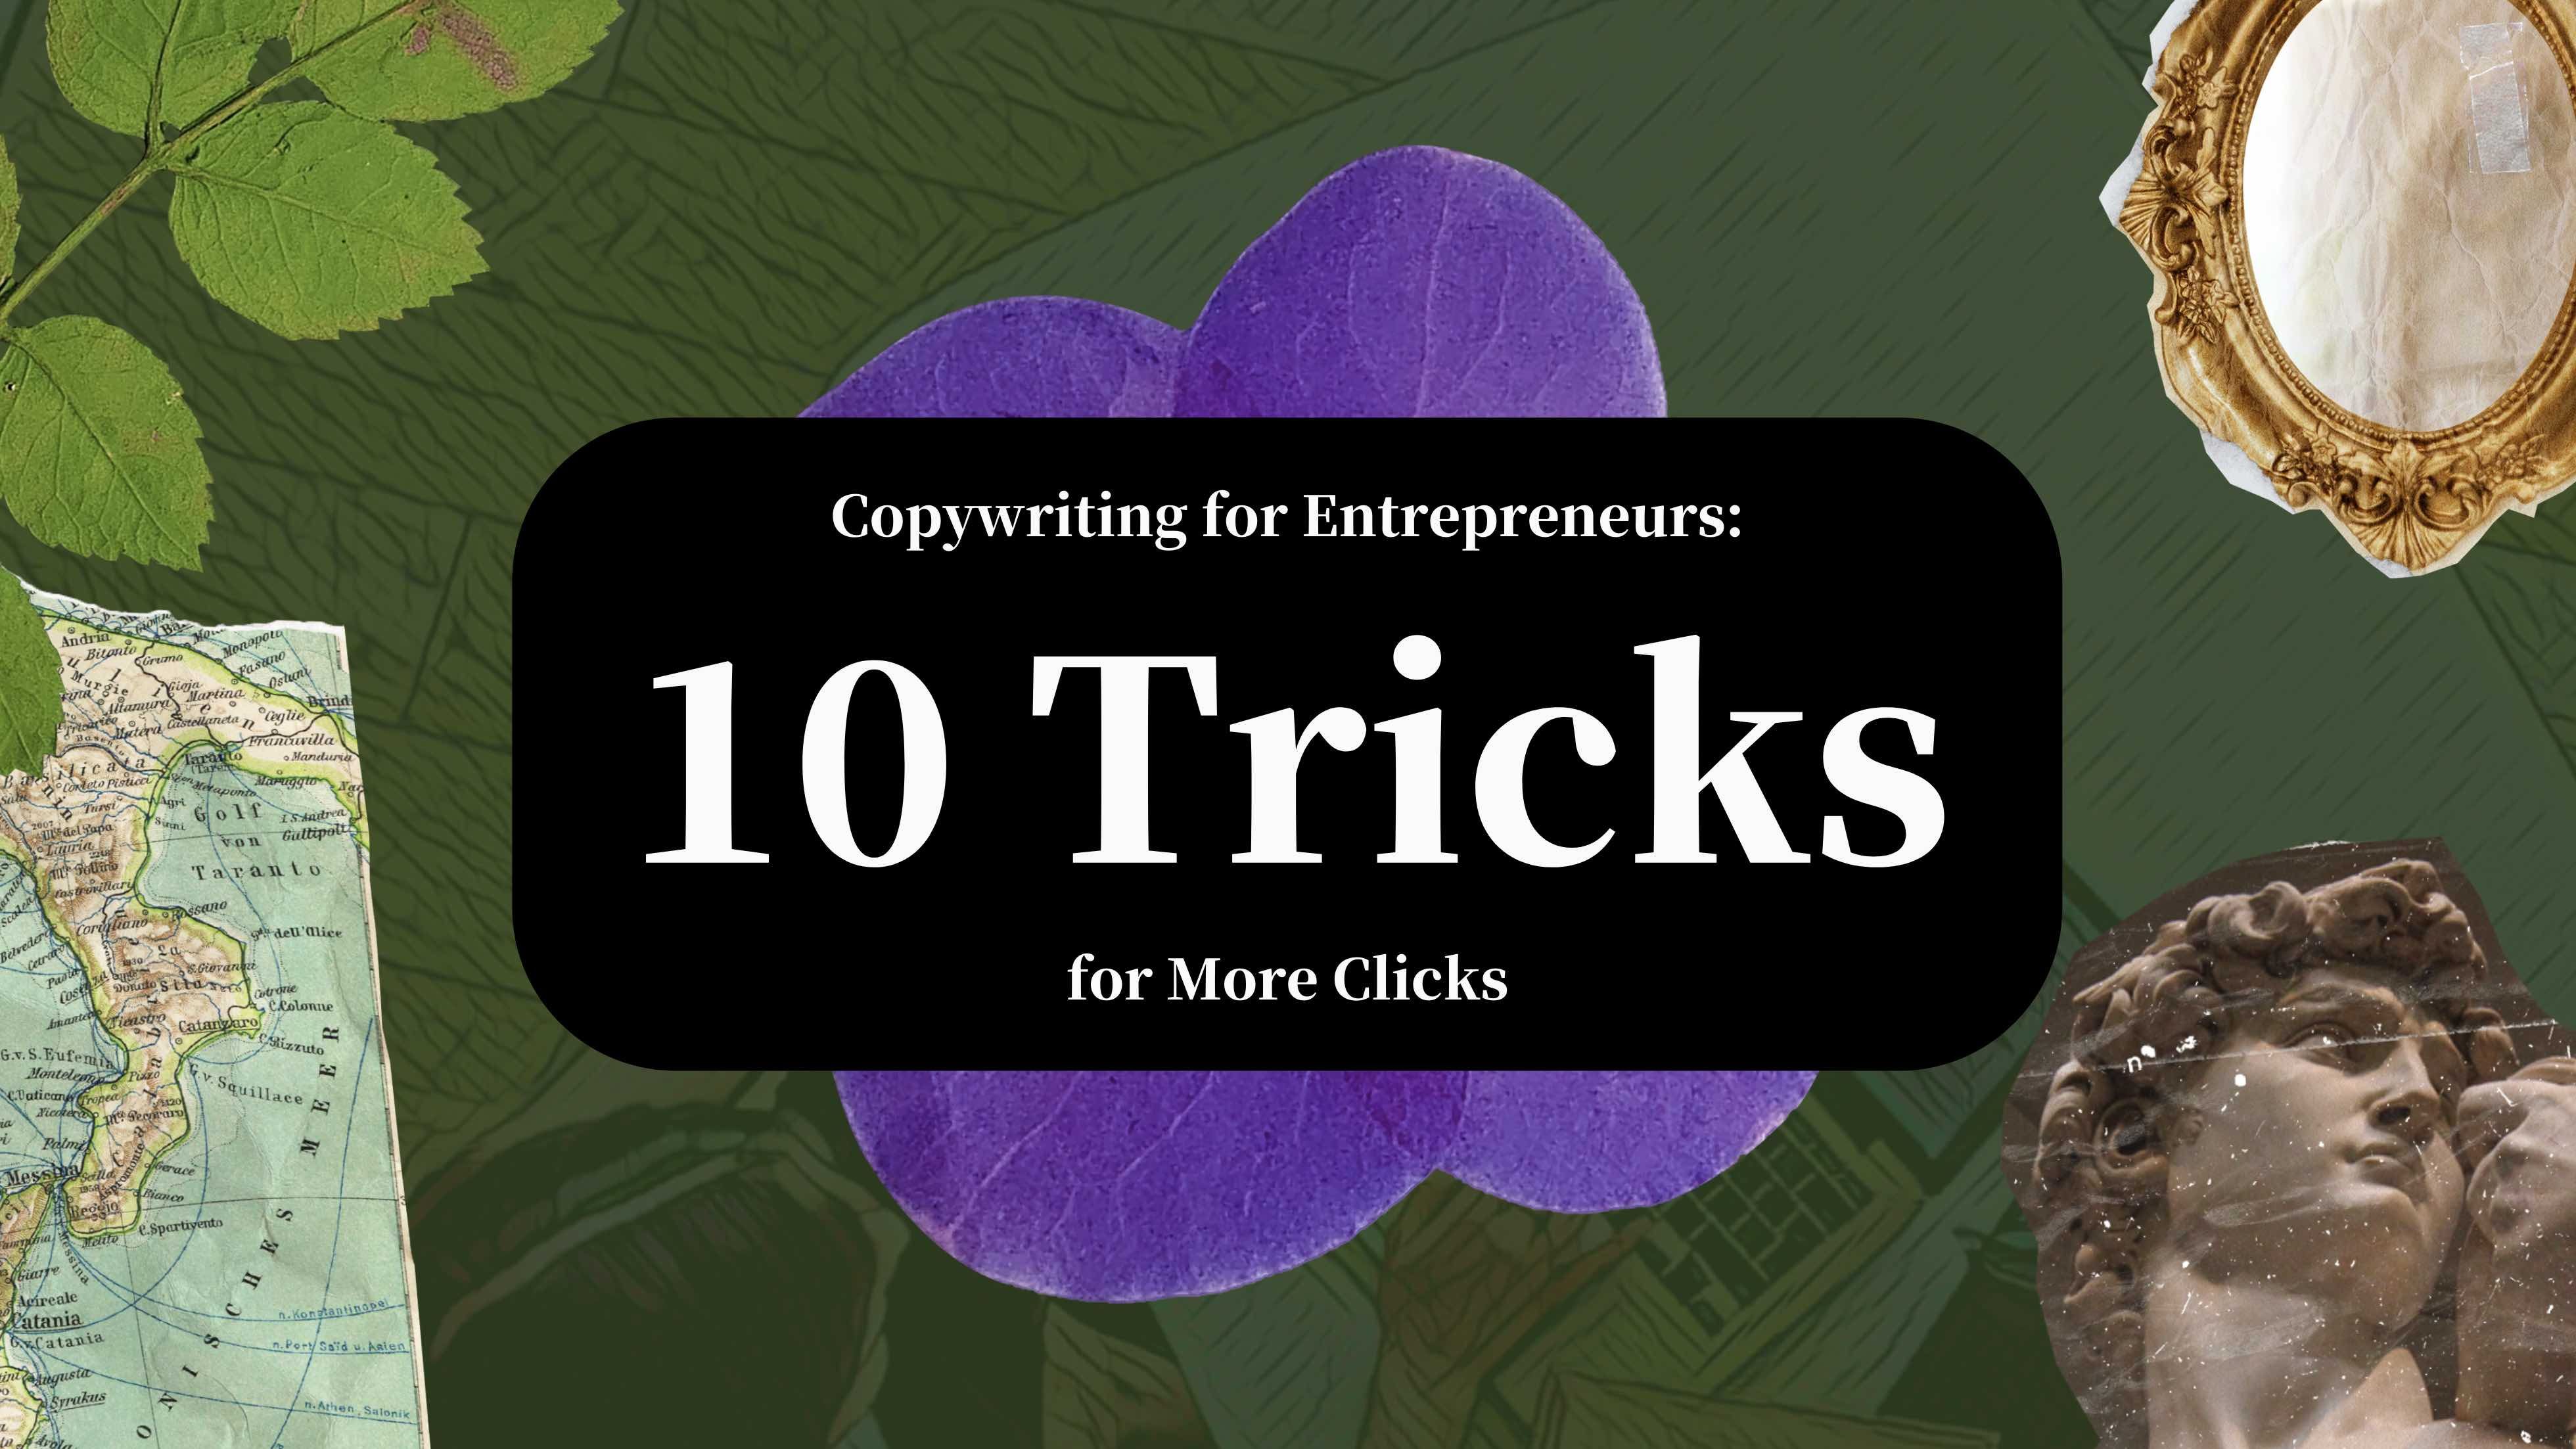 Copywriting for Entrepreneurs: 10 Tricks for More Clicks